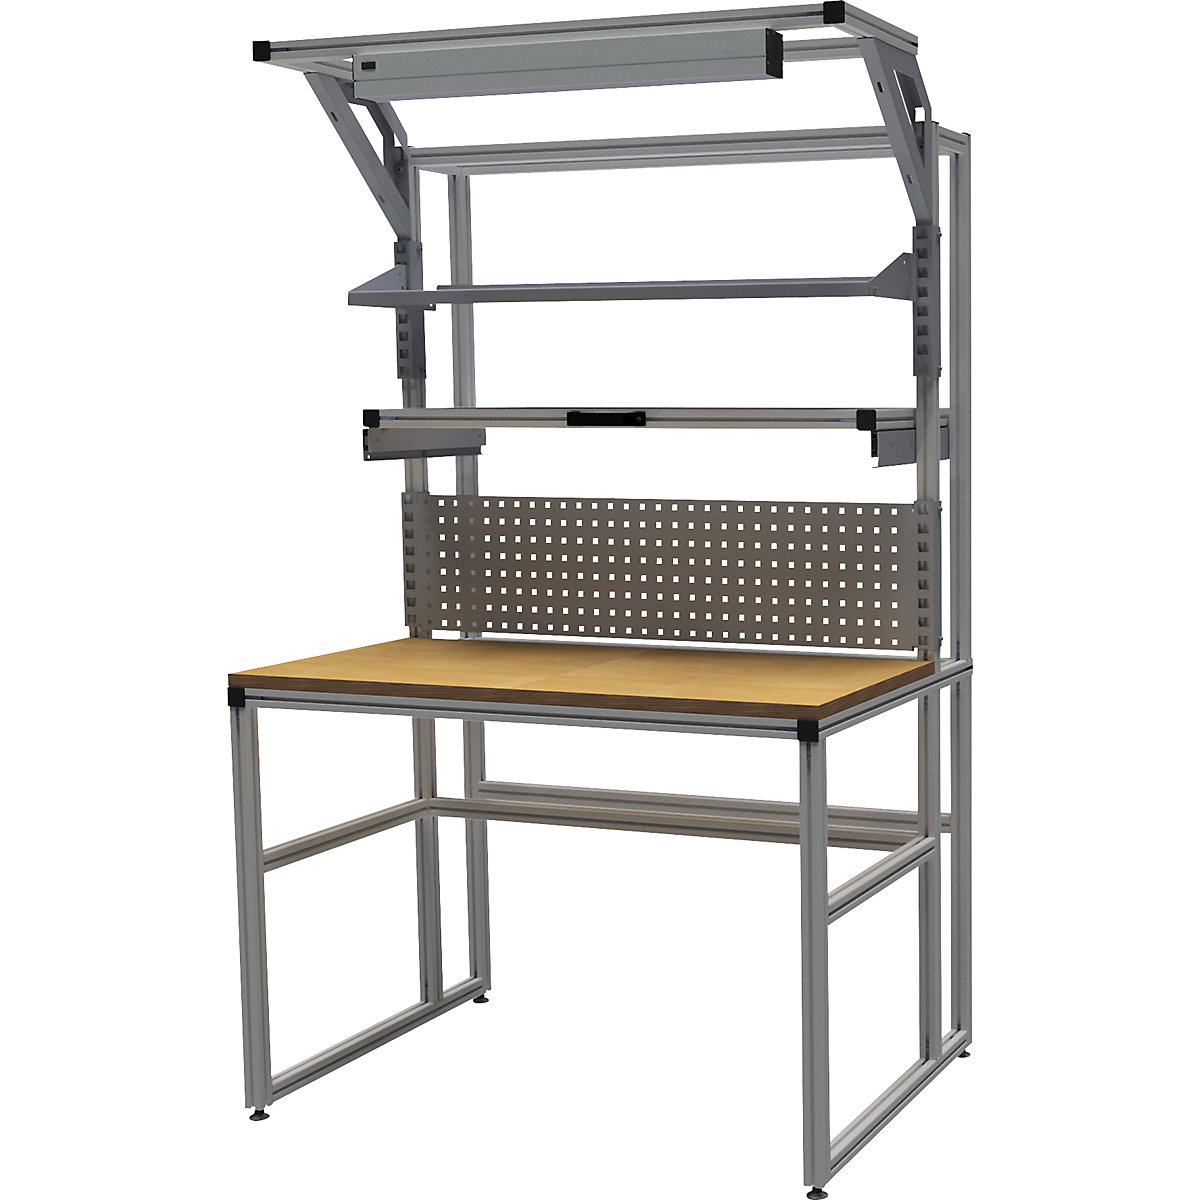 Hliníkový pracovní stůl workalu® se systémovou konstrukcí, jednostranný – bedrunka hirth